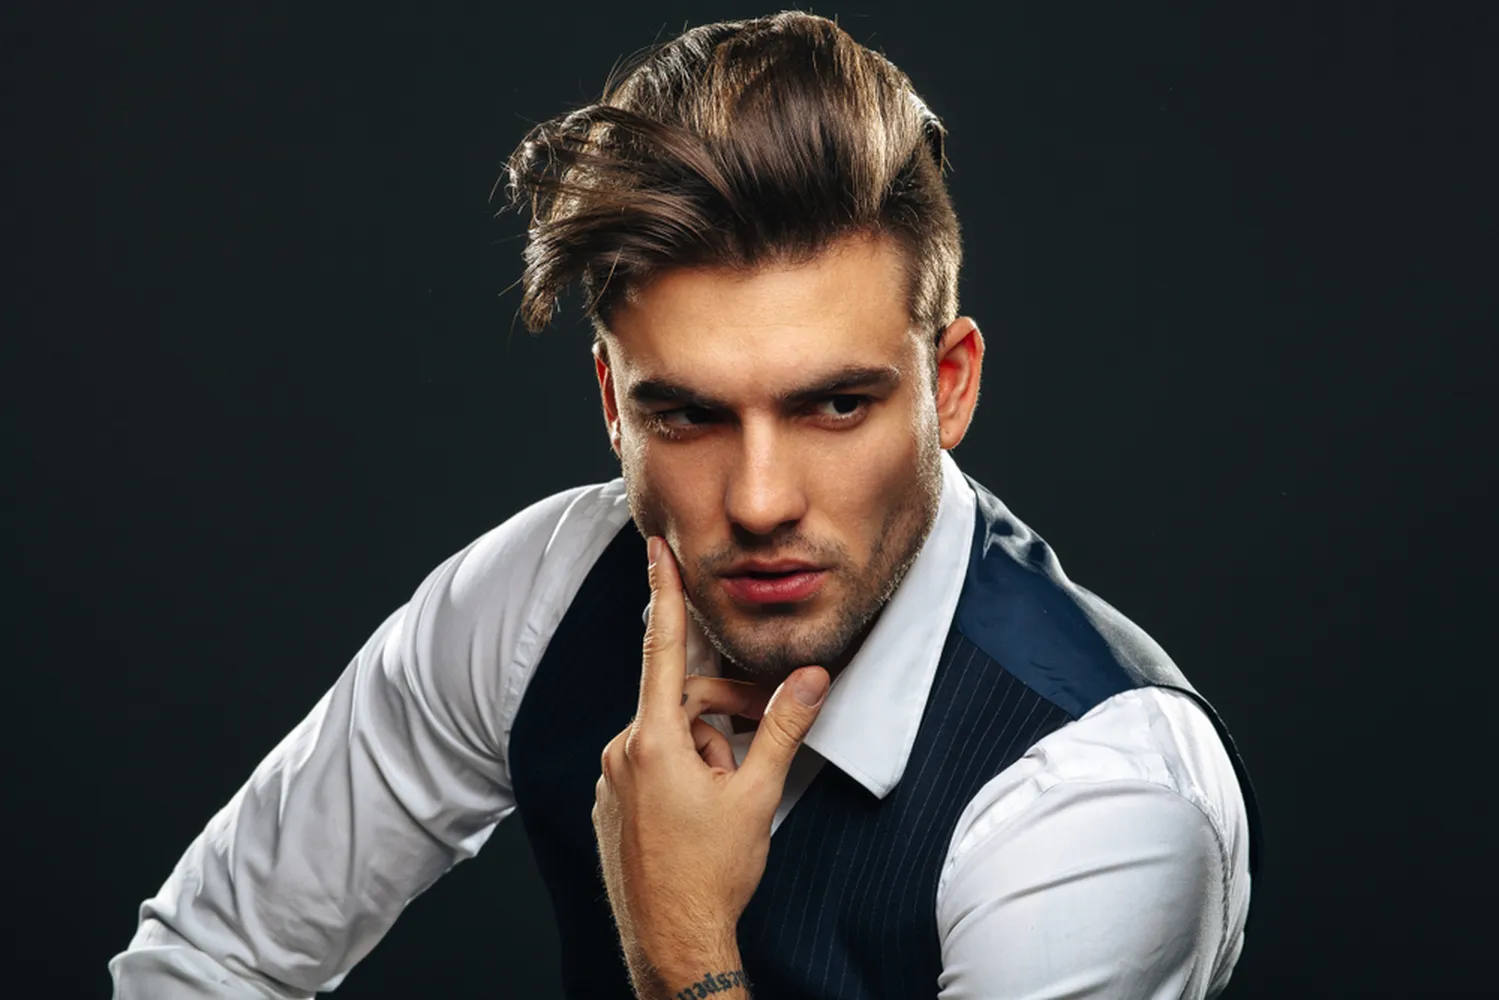 پوستر آرایشگاه مردانه طرح مرد خوش تیپ